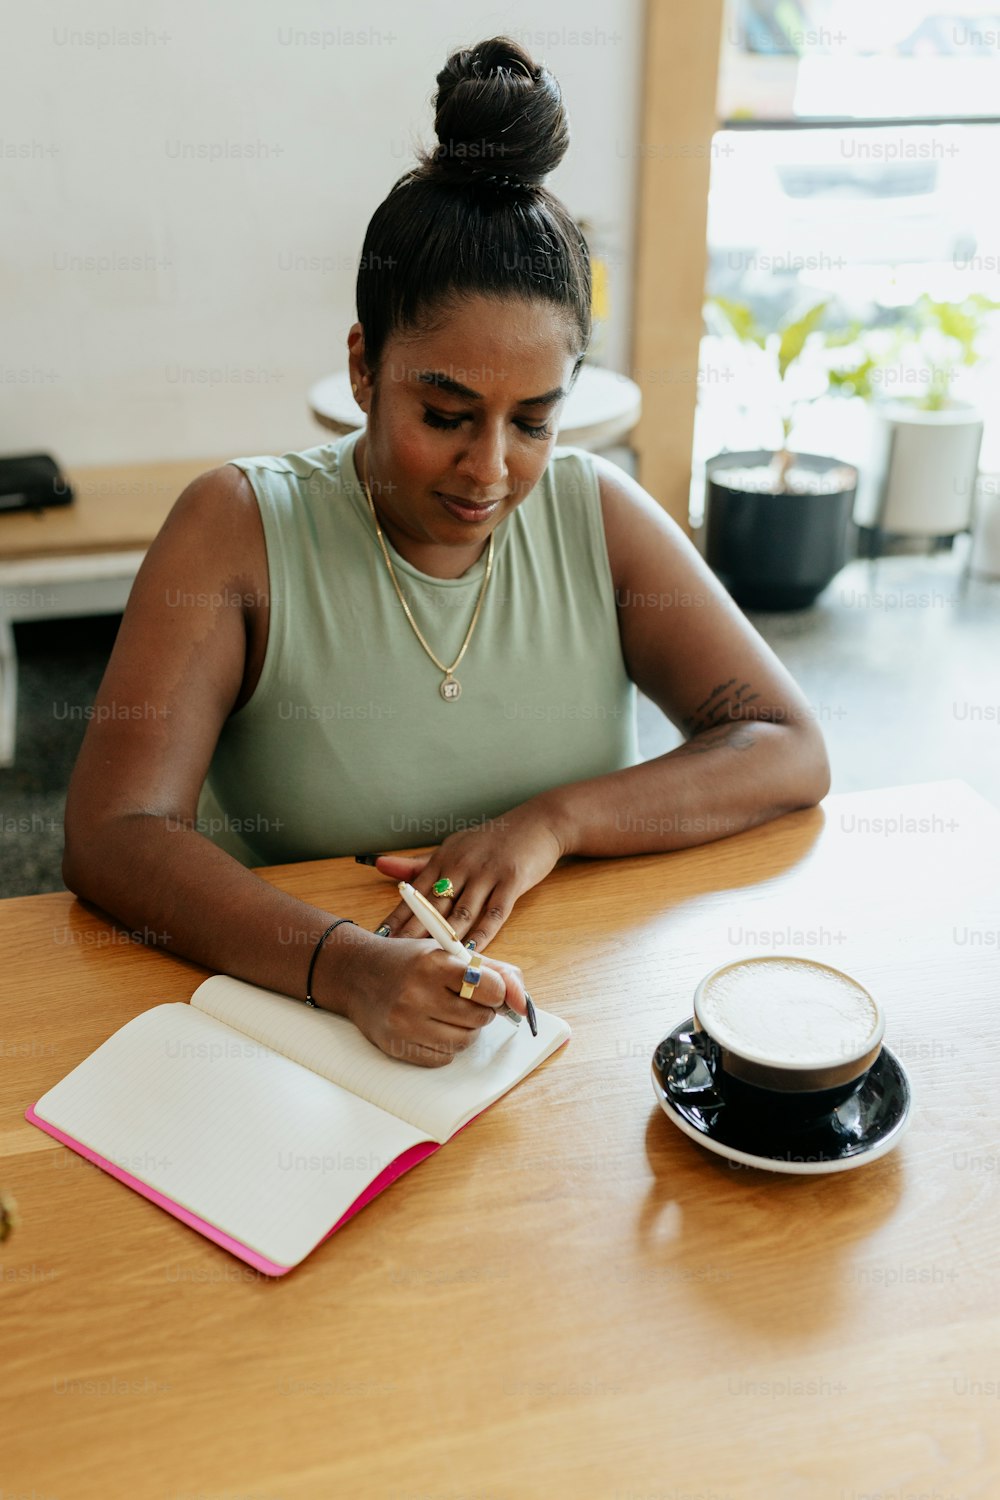 eine Frau sitzt an einem Tisch und schreibt in ein Notizbuch